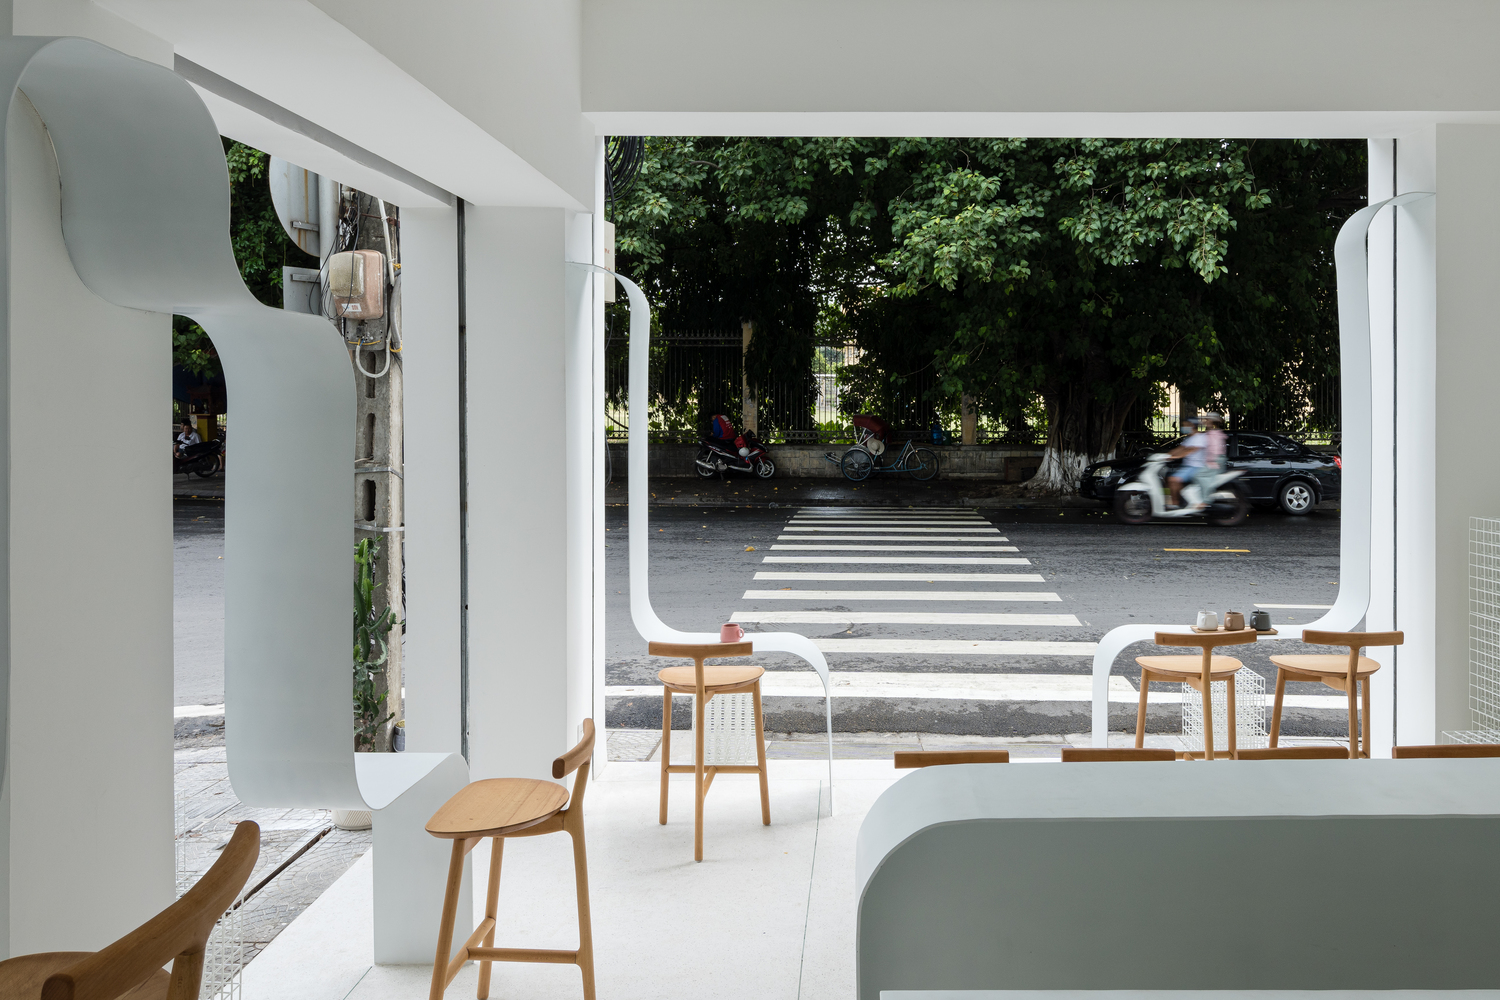 tầng trệt quán cà phê với ghế ngồi bằng gỗ cao thoáng, nhìn ra đường lớn với nhiều cây xanh